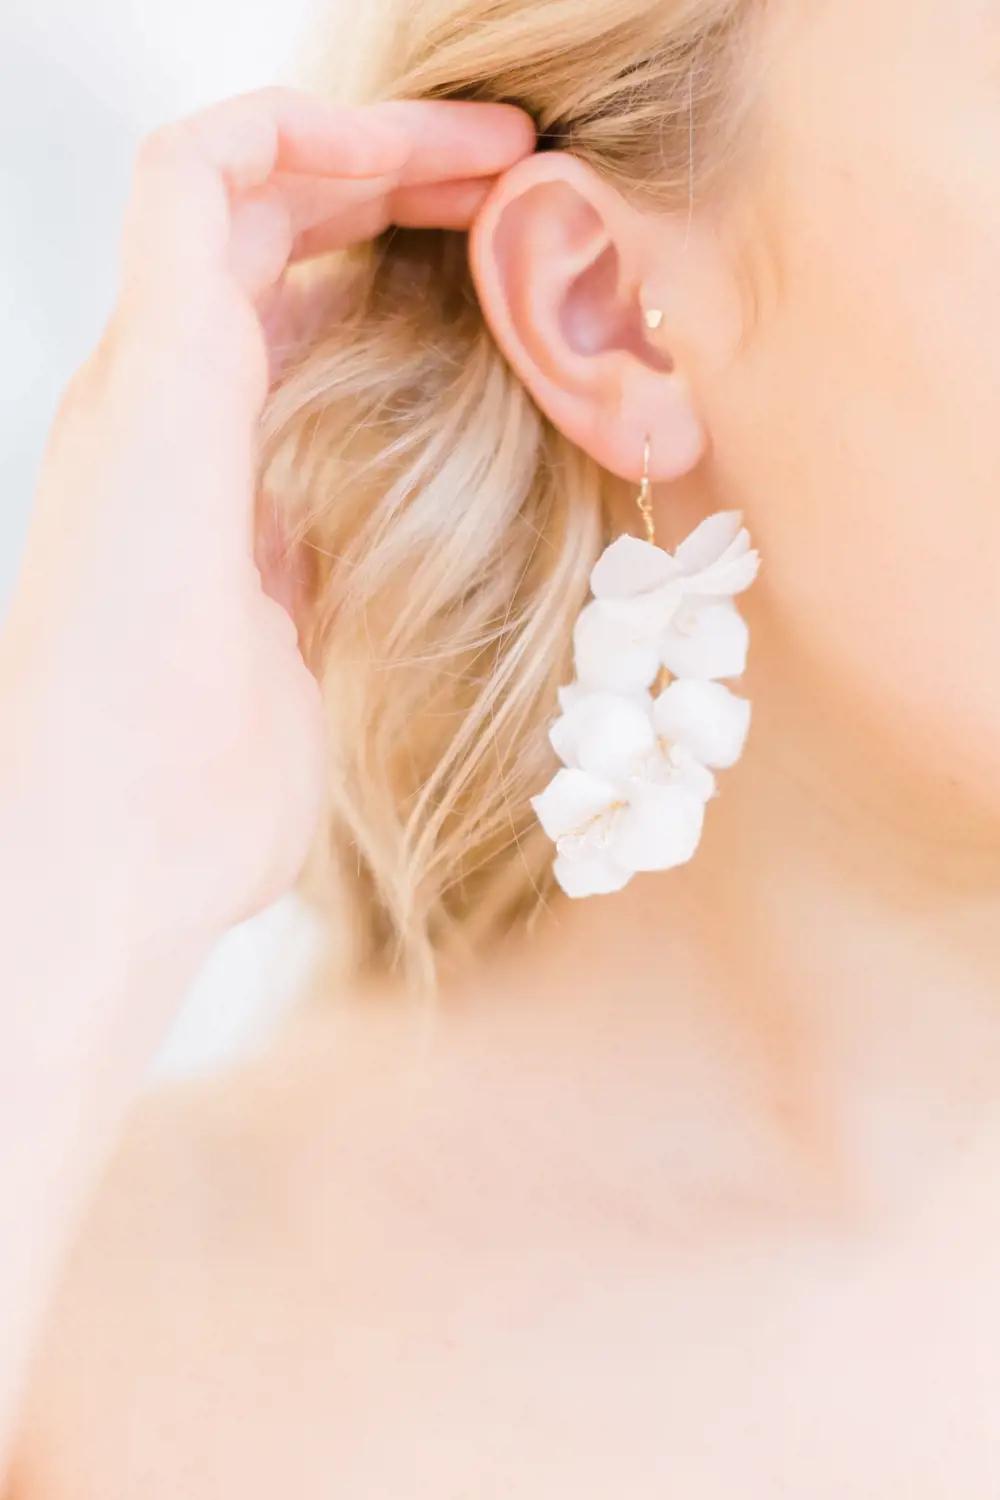 Morgan Davies Bridal model wearing a custom earring as bridal accessory